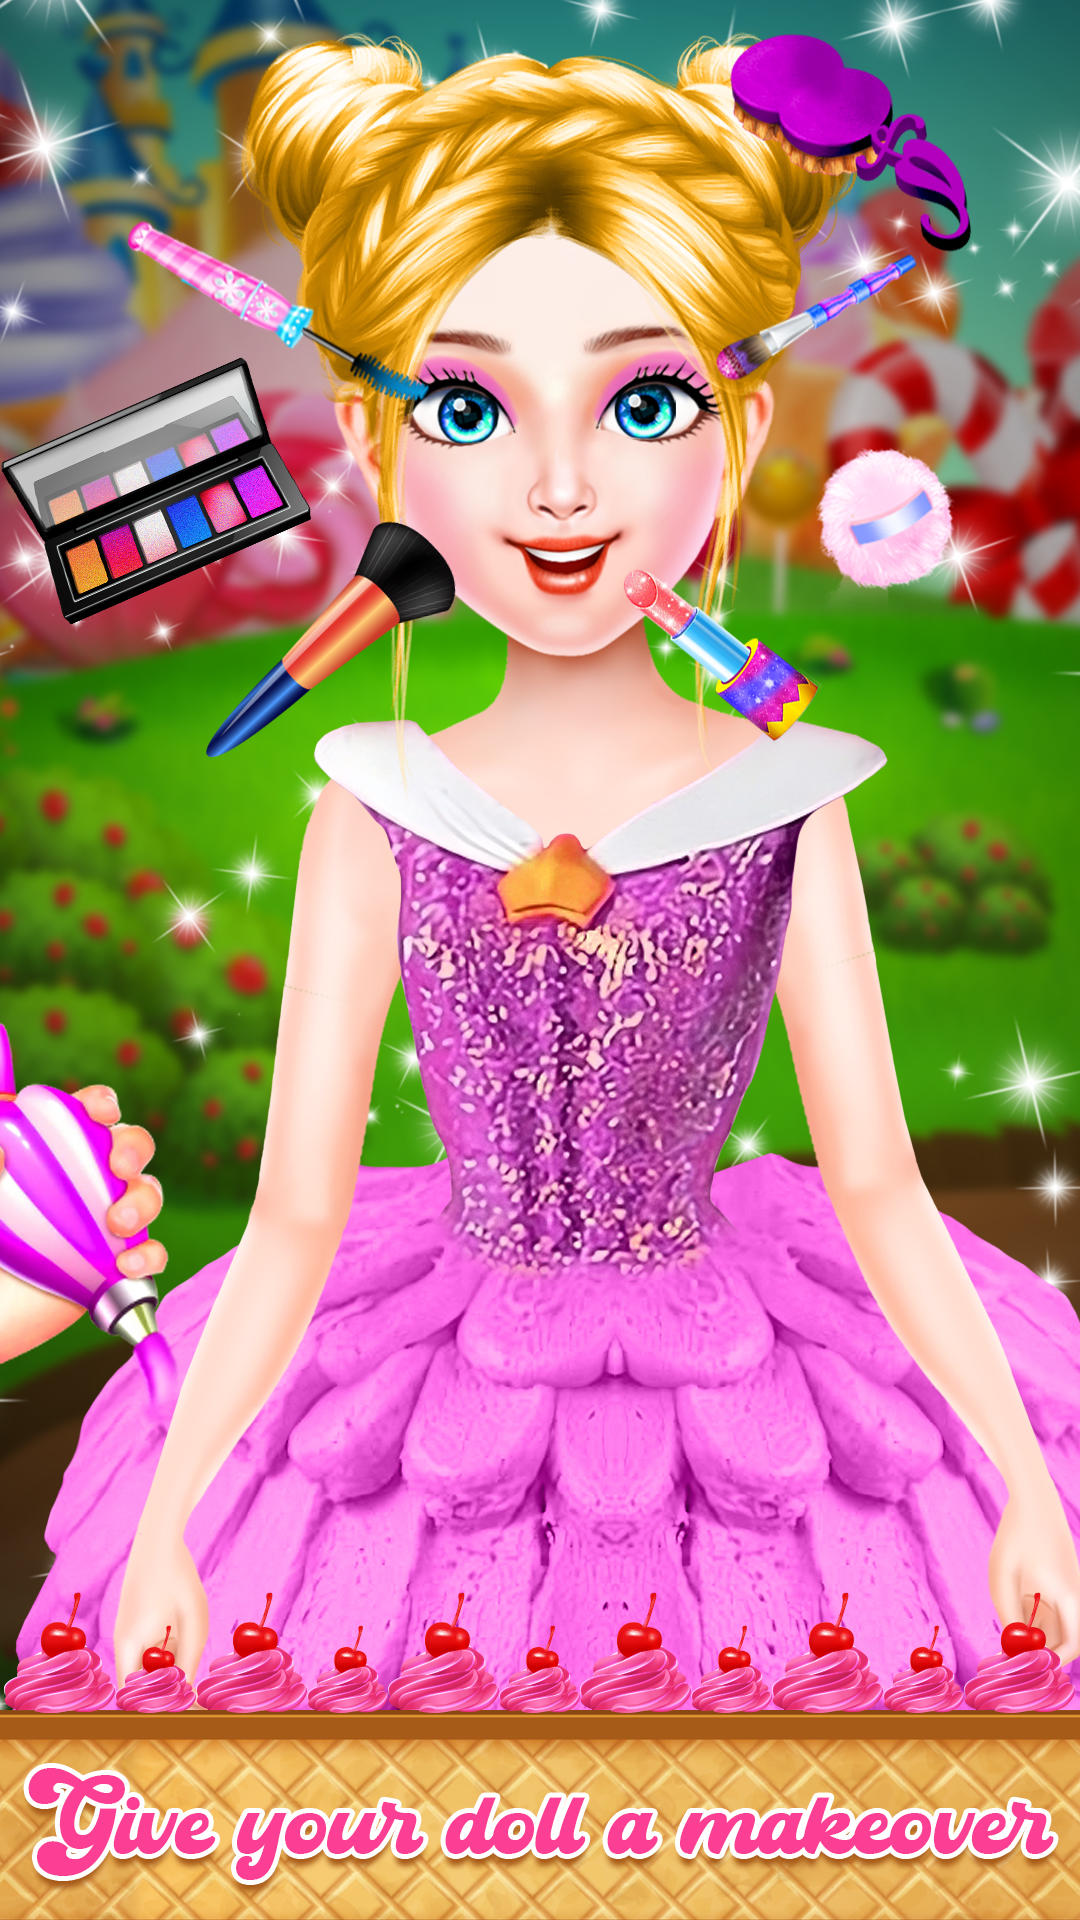 Princess cake Birthday cake Torte Tart Games for girls, Princess Cake, game,  computer, tart png | PNGWing